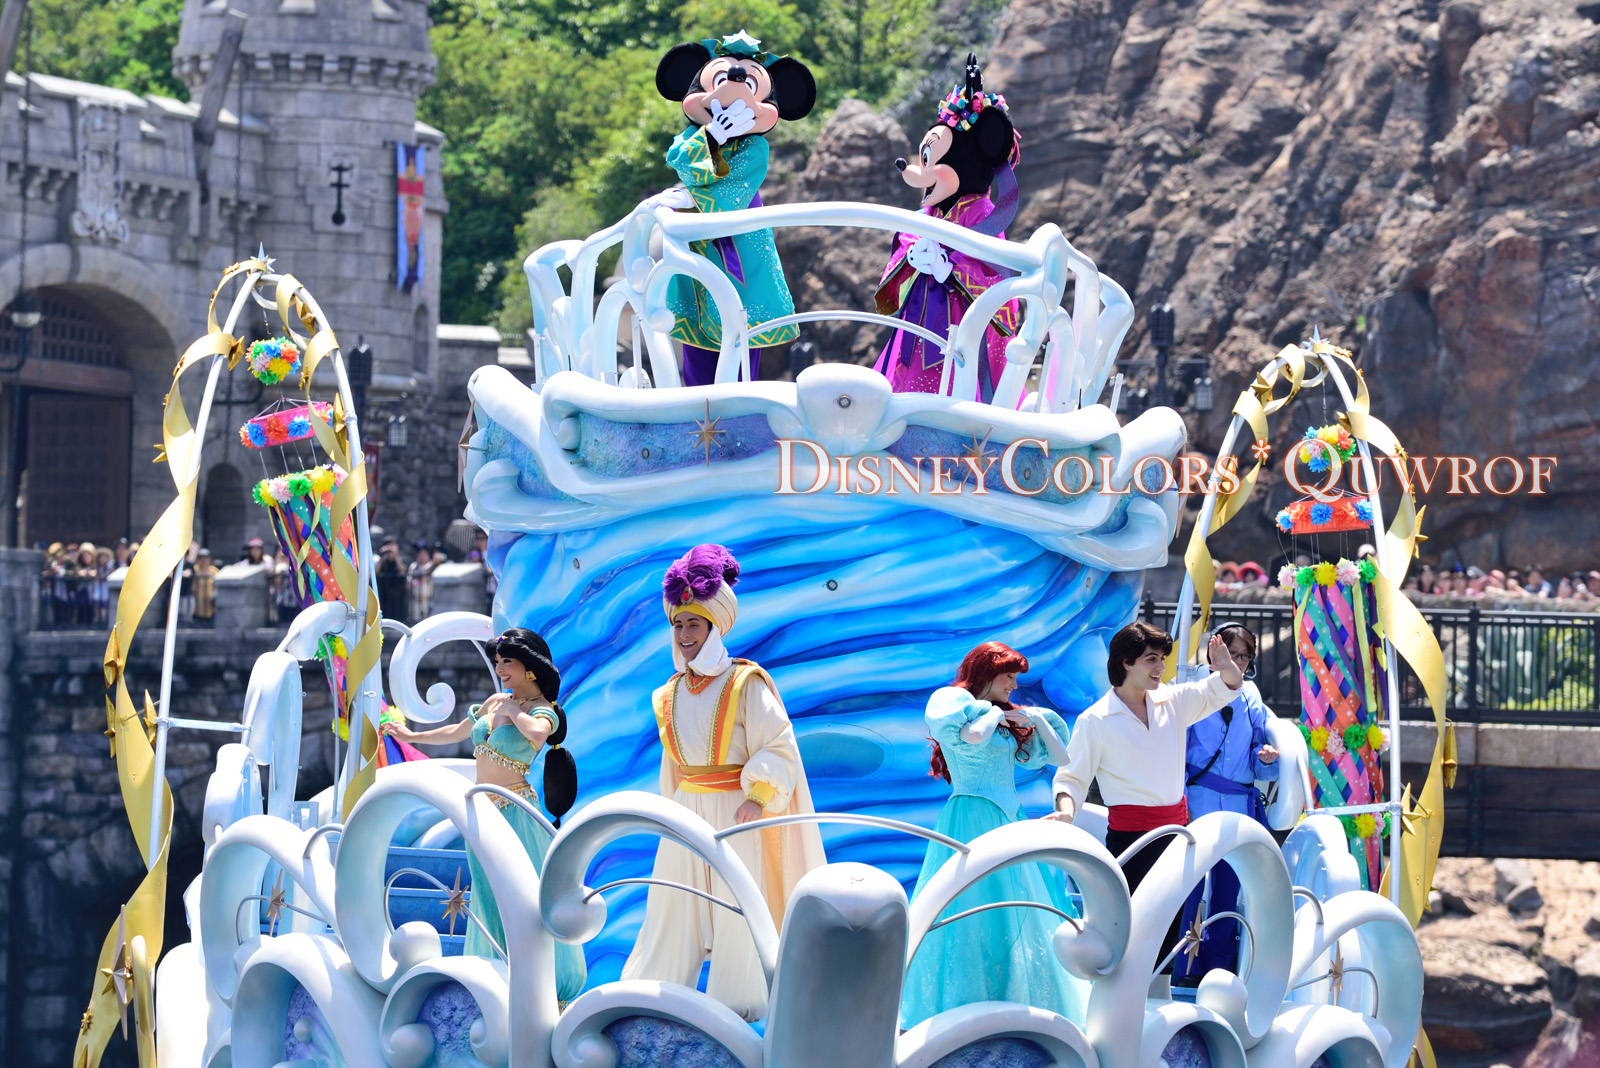 今年は3週間開催 Tdl Tds ディズニー七夕デイズ16 詳細発表 Disney Colors Blog